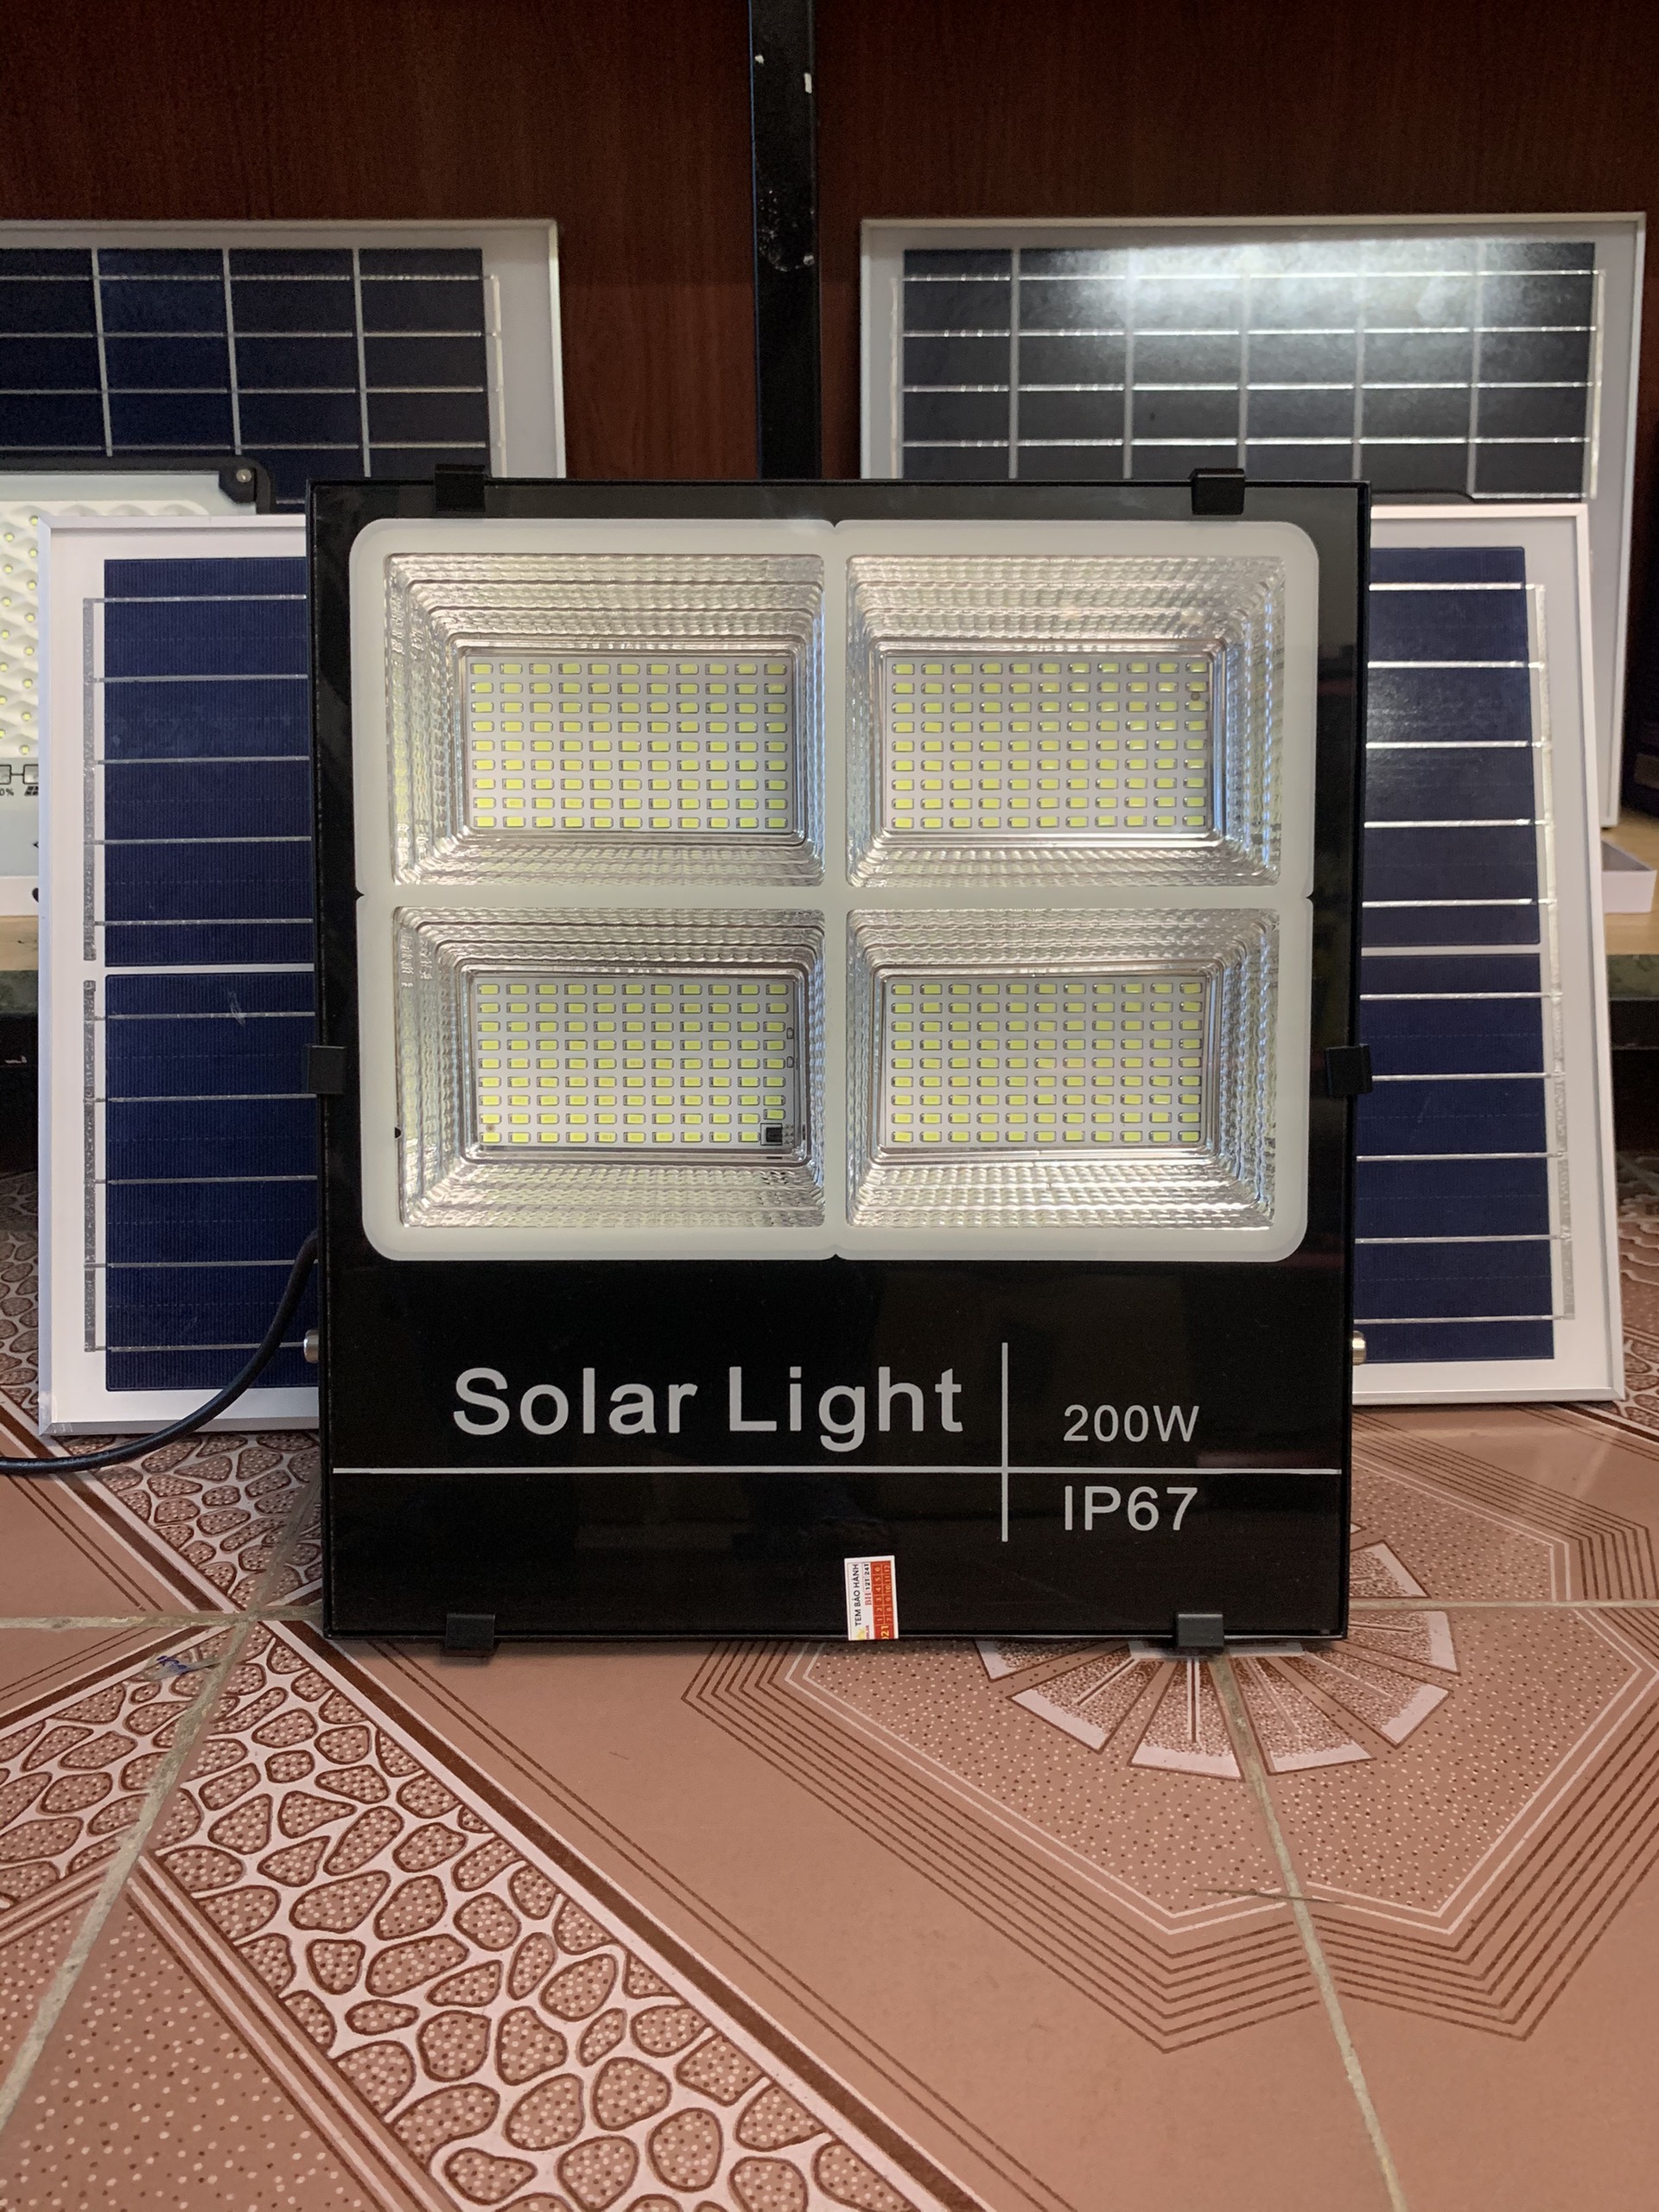 Đèn pha Led năng lượng mặt trời 4 ô công suất 100W-200W- Tự động bật tắt khi trời tối, Đèn sáng cả đêm - Bảo hành 2 năm